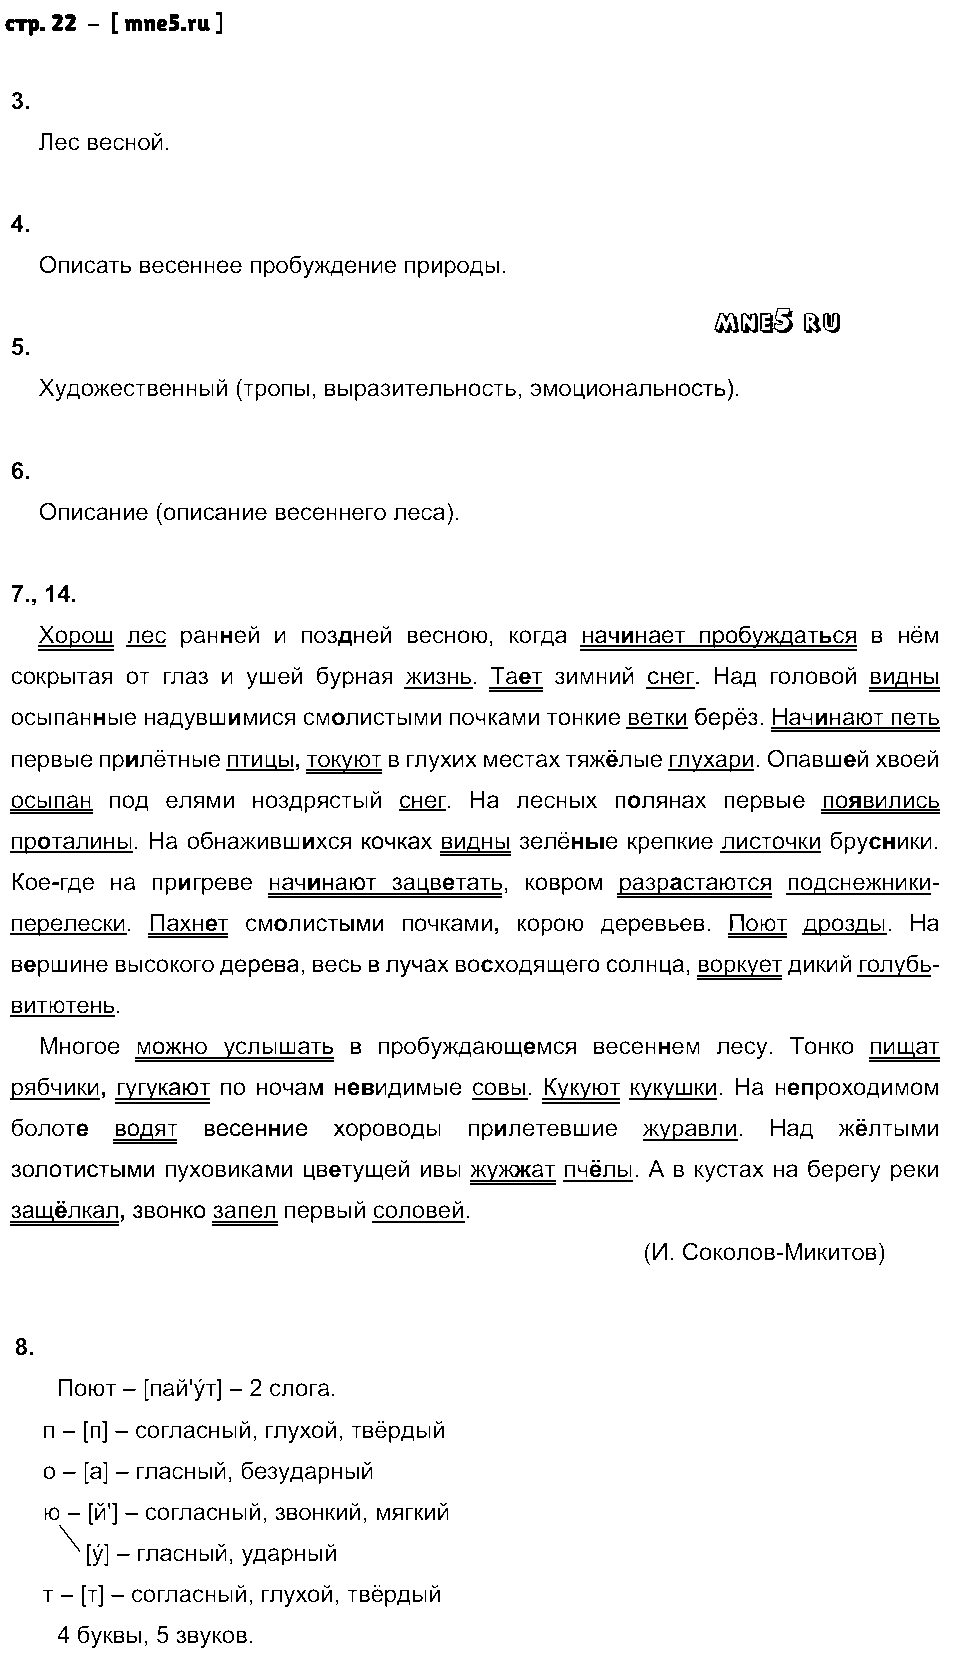 ГДЗ Русский язык 8 класс - стр. 22